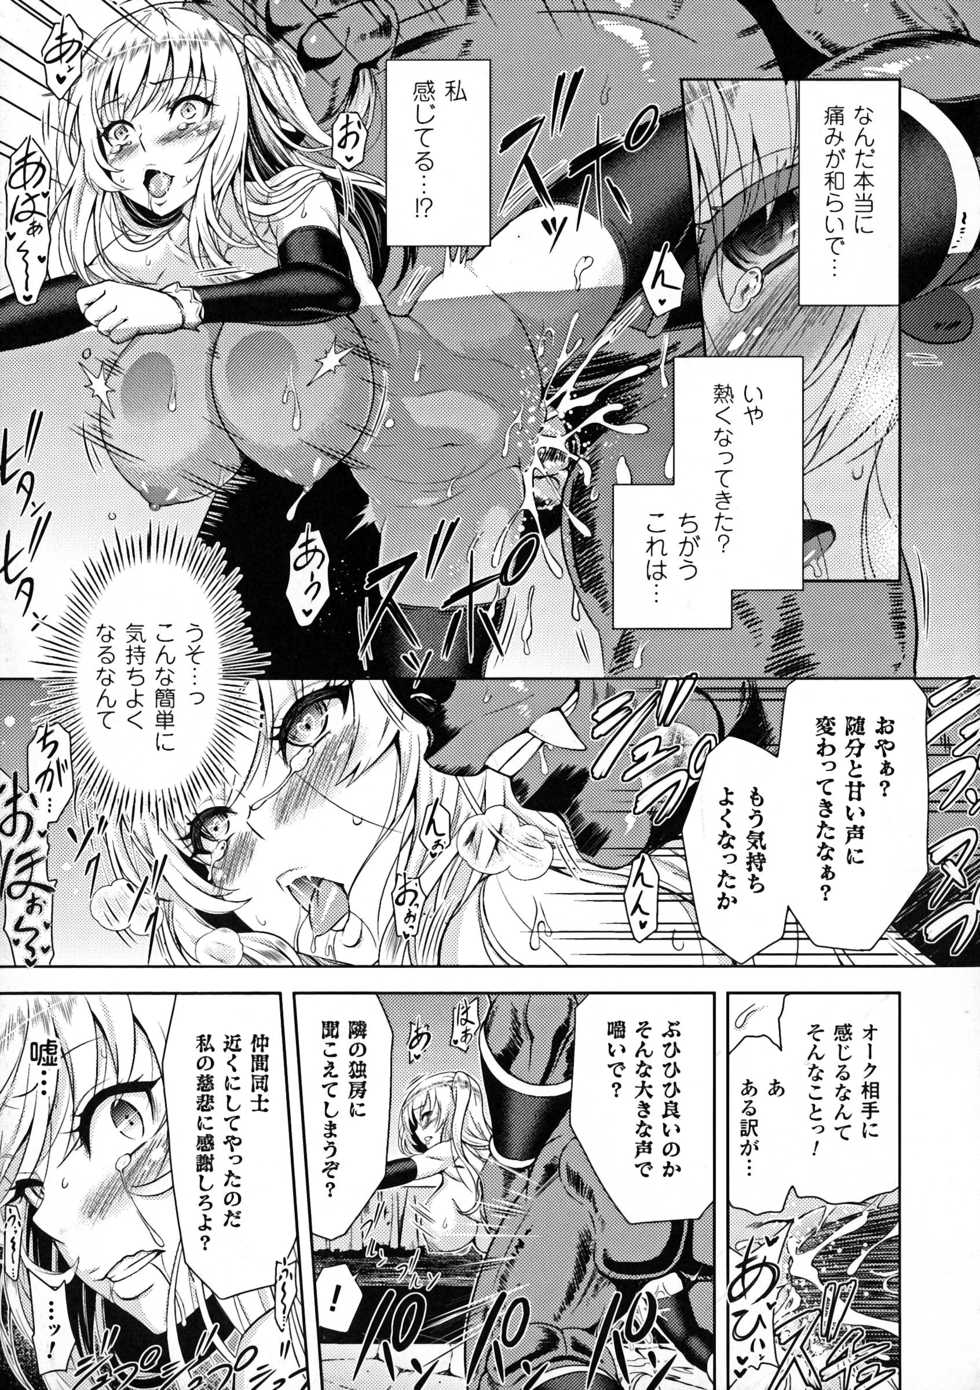 [Anthology] Seigi no Heroine Kangoku File DX Vol. 7 - Page 23